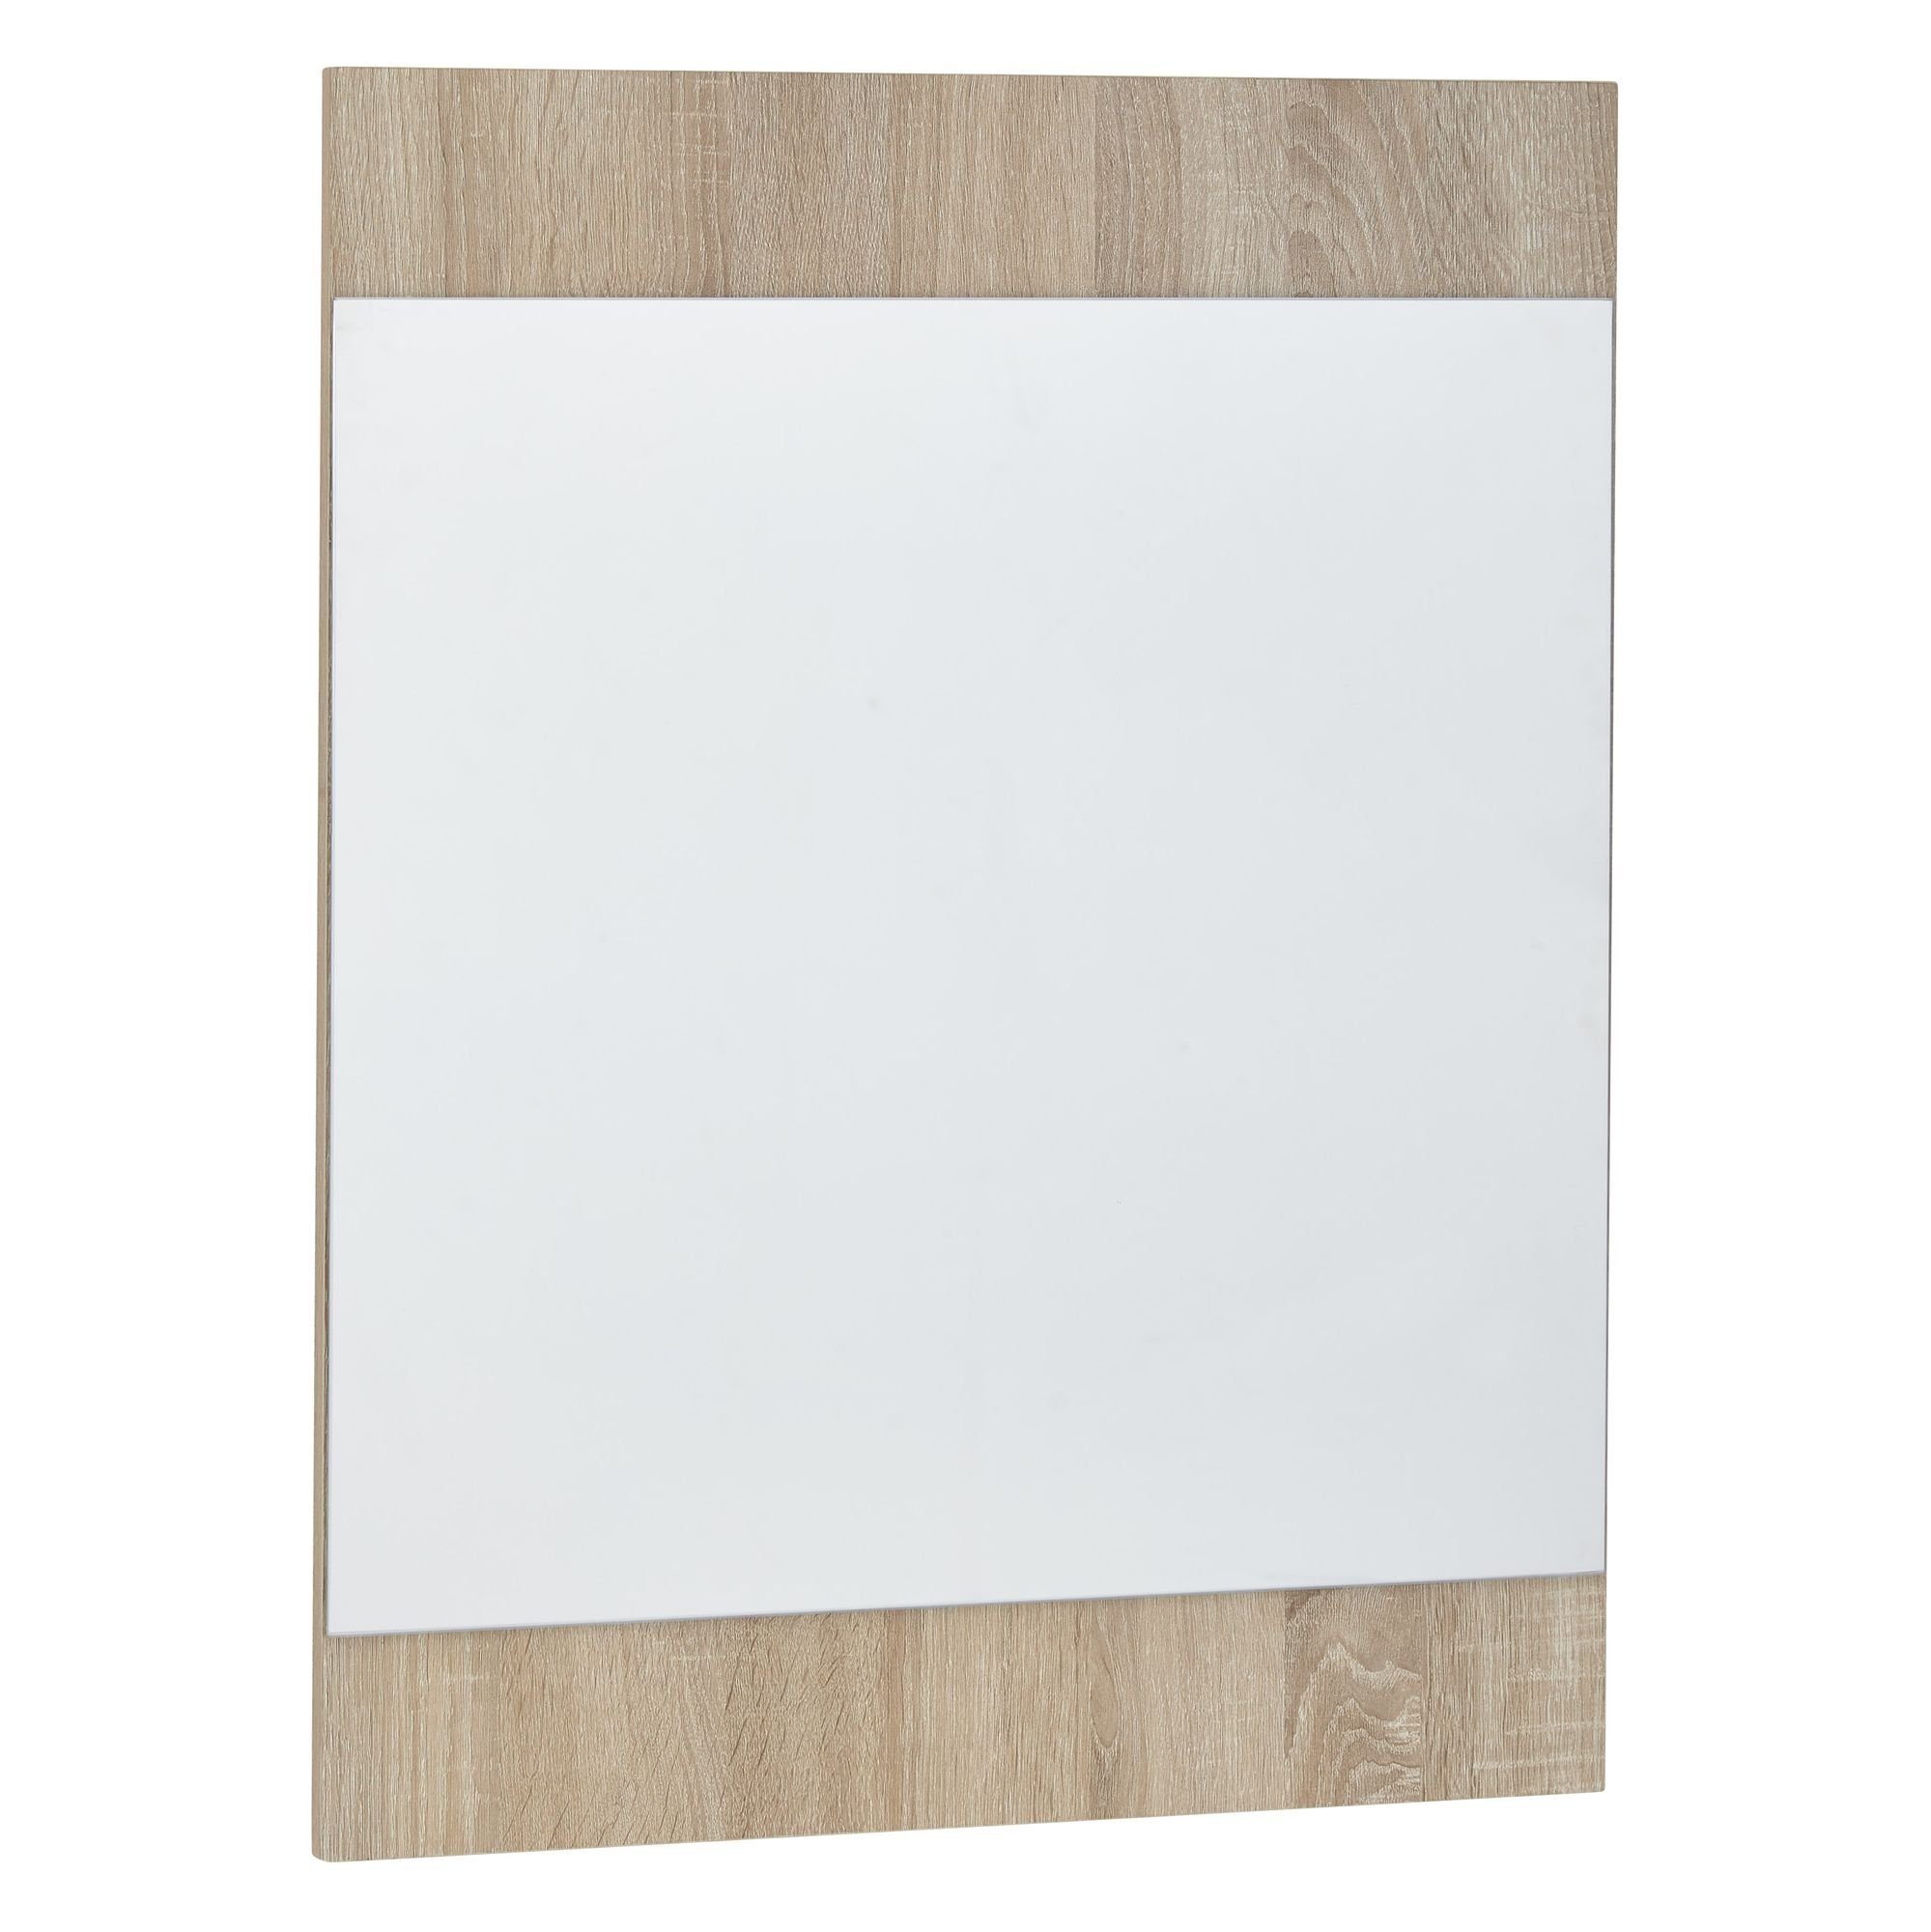 KADIMA DESIGN Wandgarderobe Wandspiegel Sonoma Eiche 60x80x1,8cm Design,  Hängespiegel Spiegel Wand, Moderner Garderobenspiegel